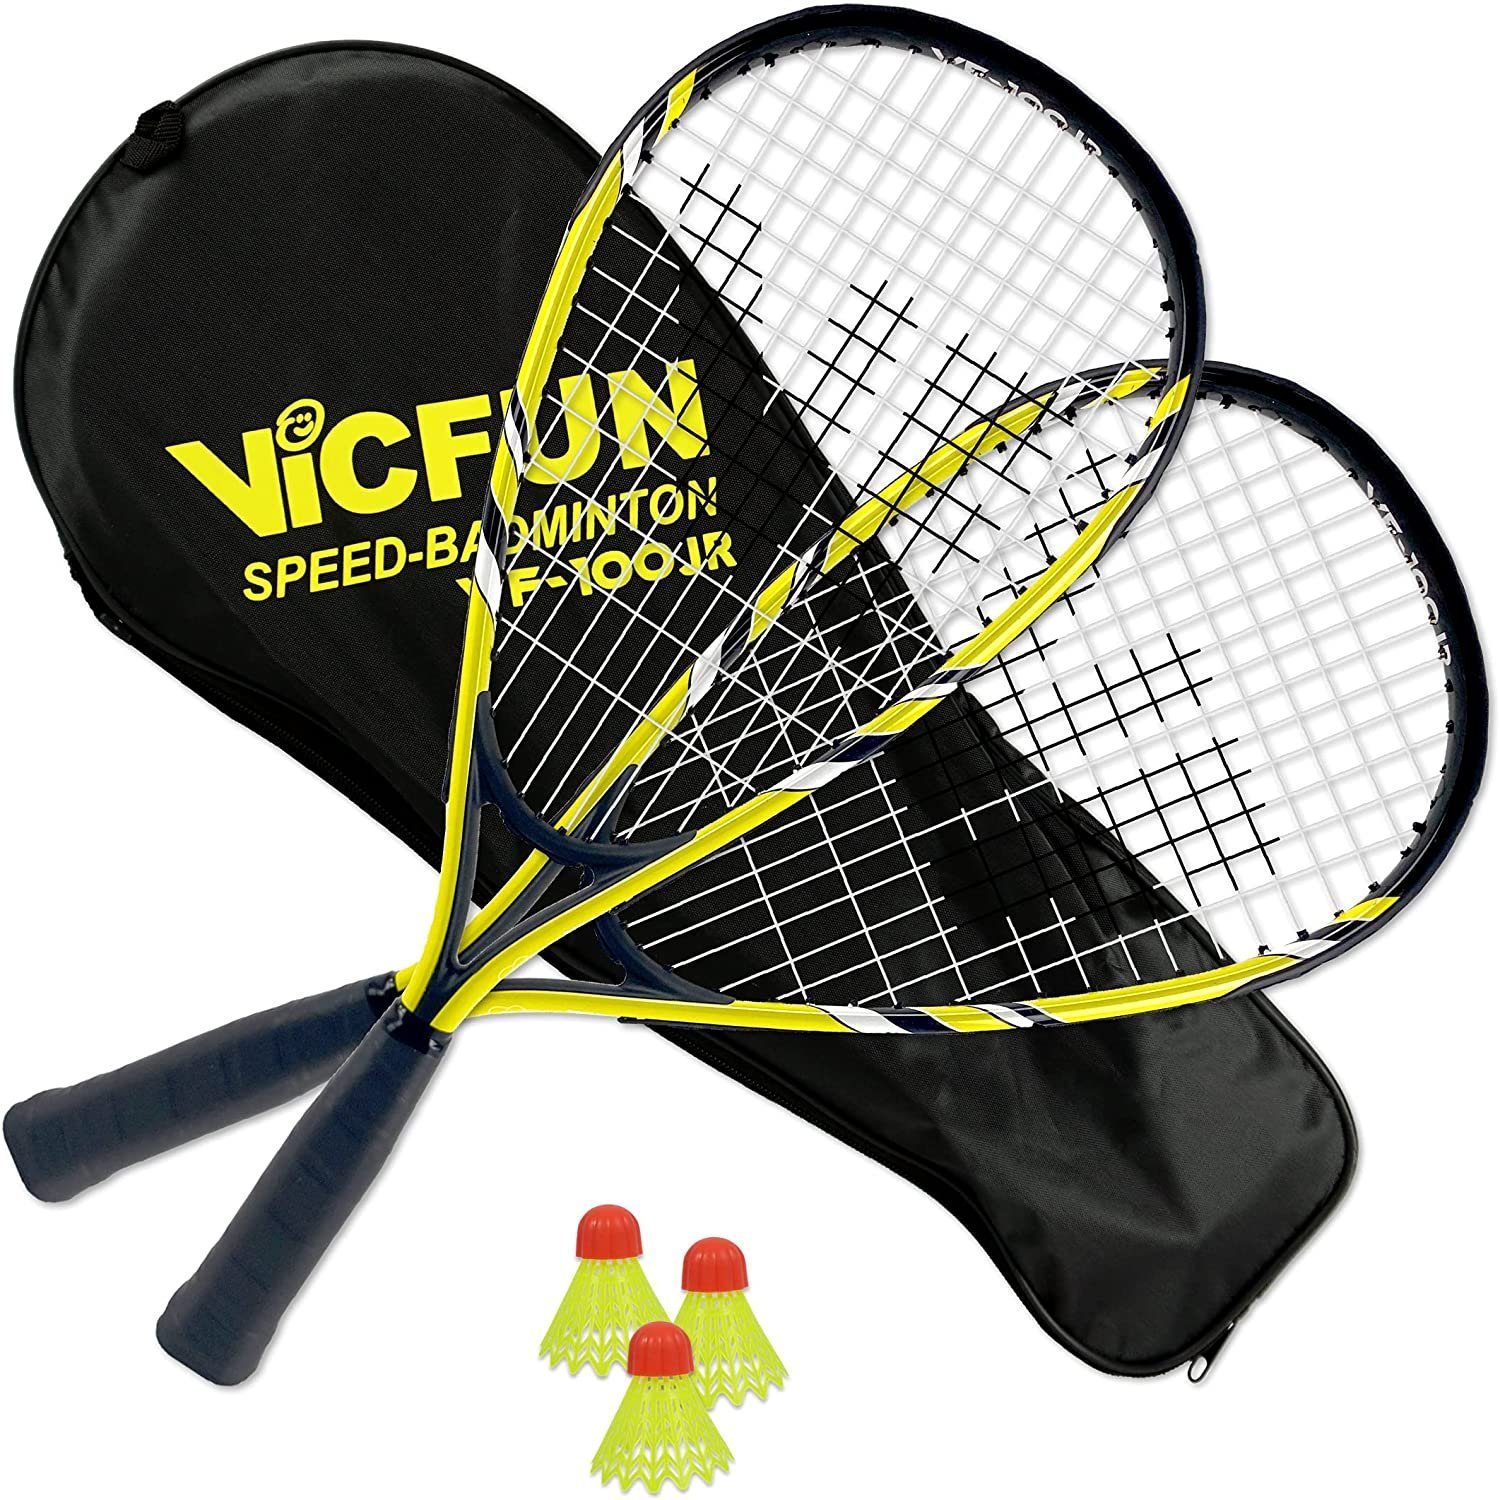 Badmintonschläger gelb/schwarz Speed Badminton Junior VICFUN 100